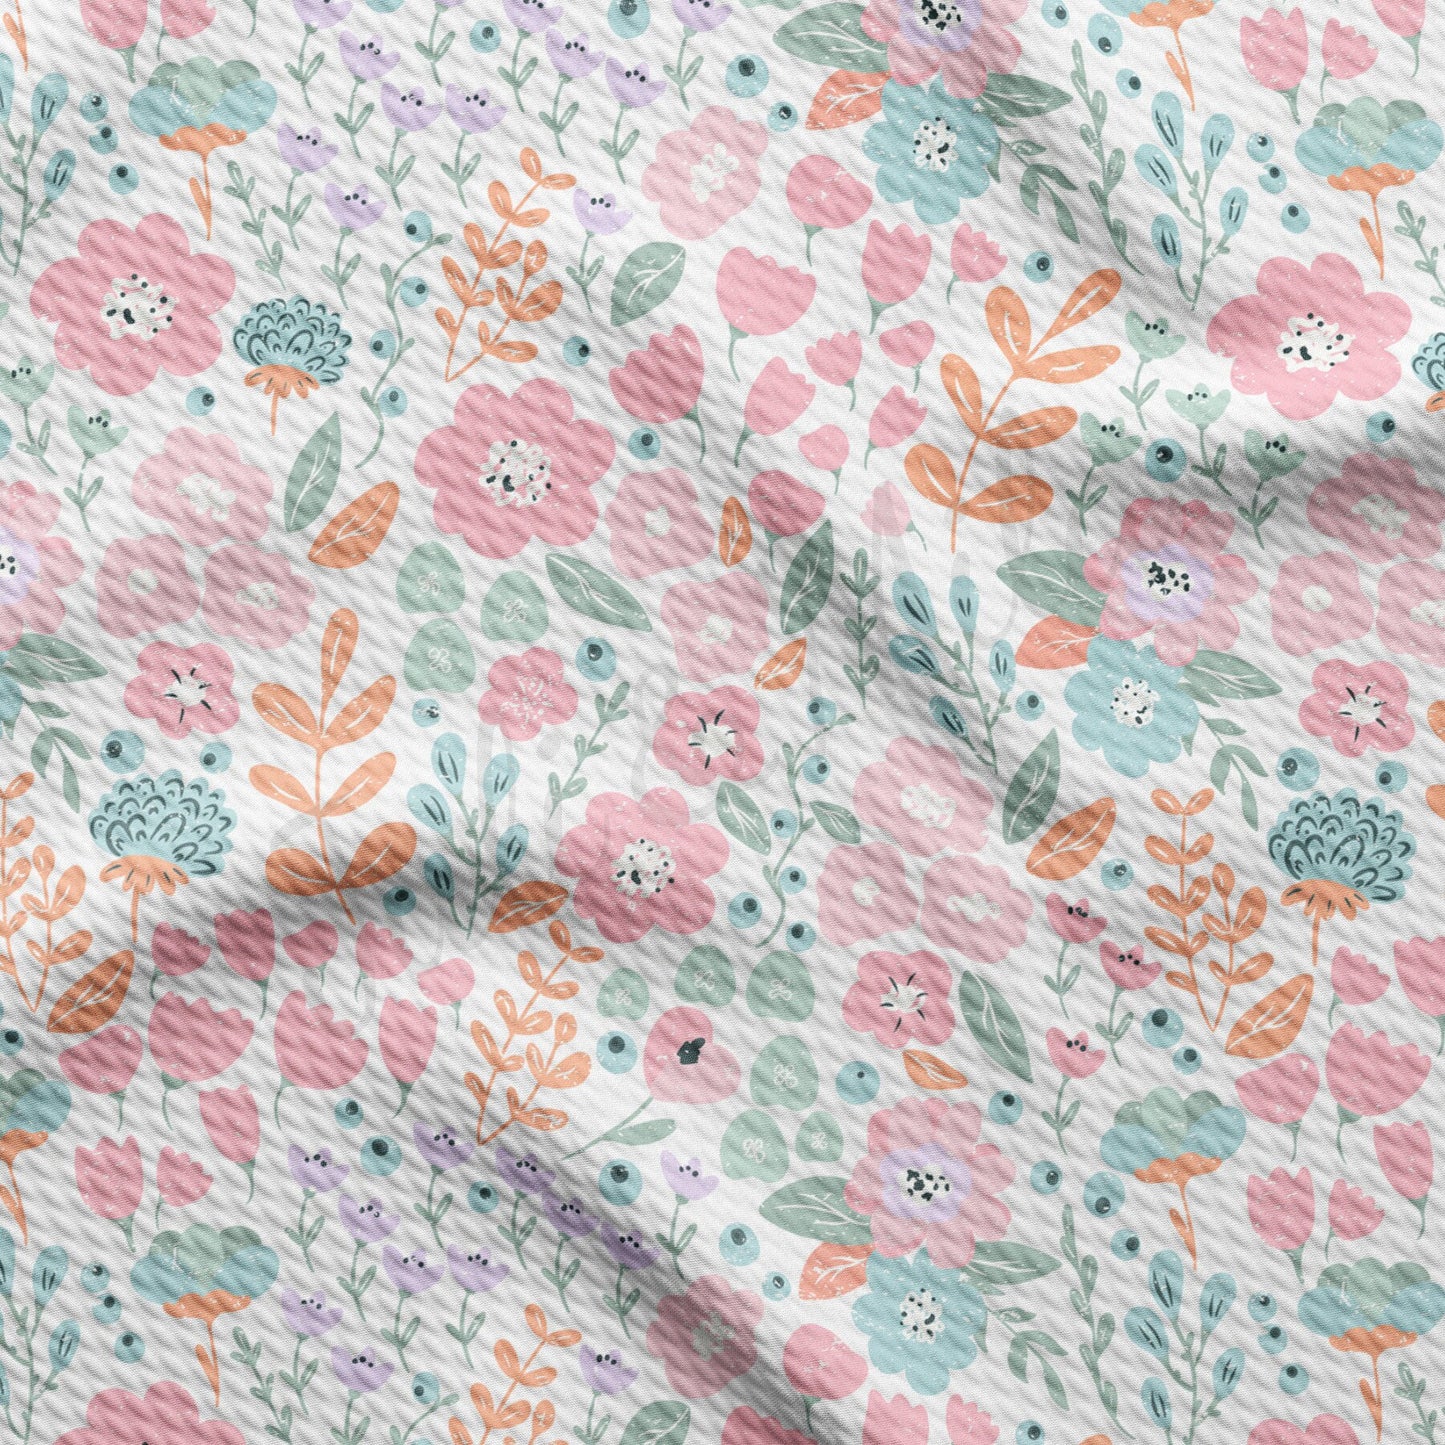 Floral Rib Knit Fabric  RBK1573